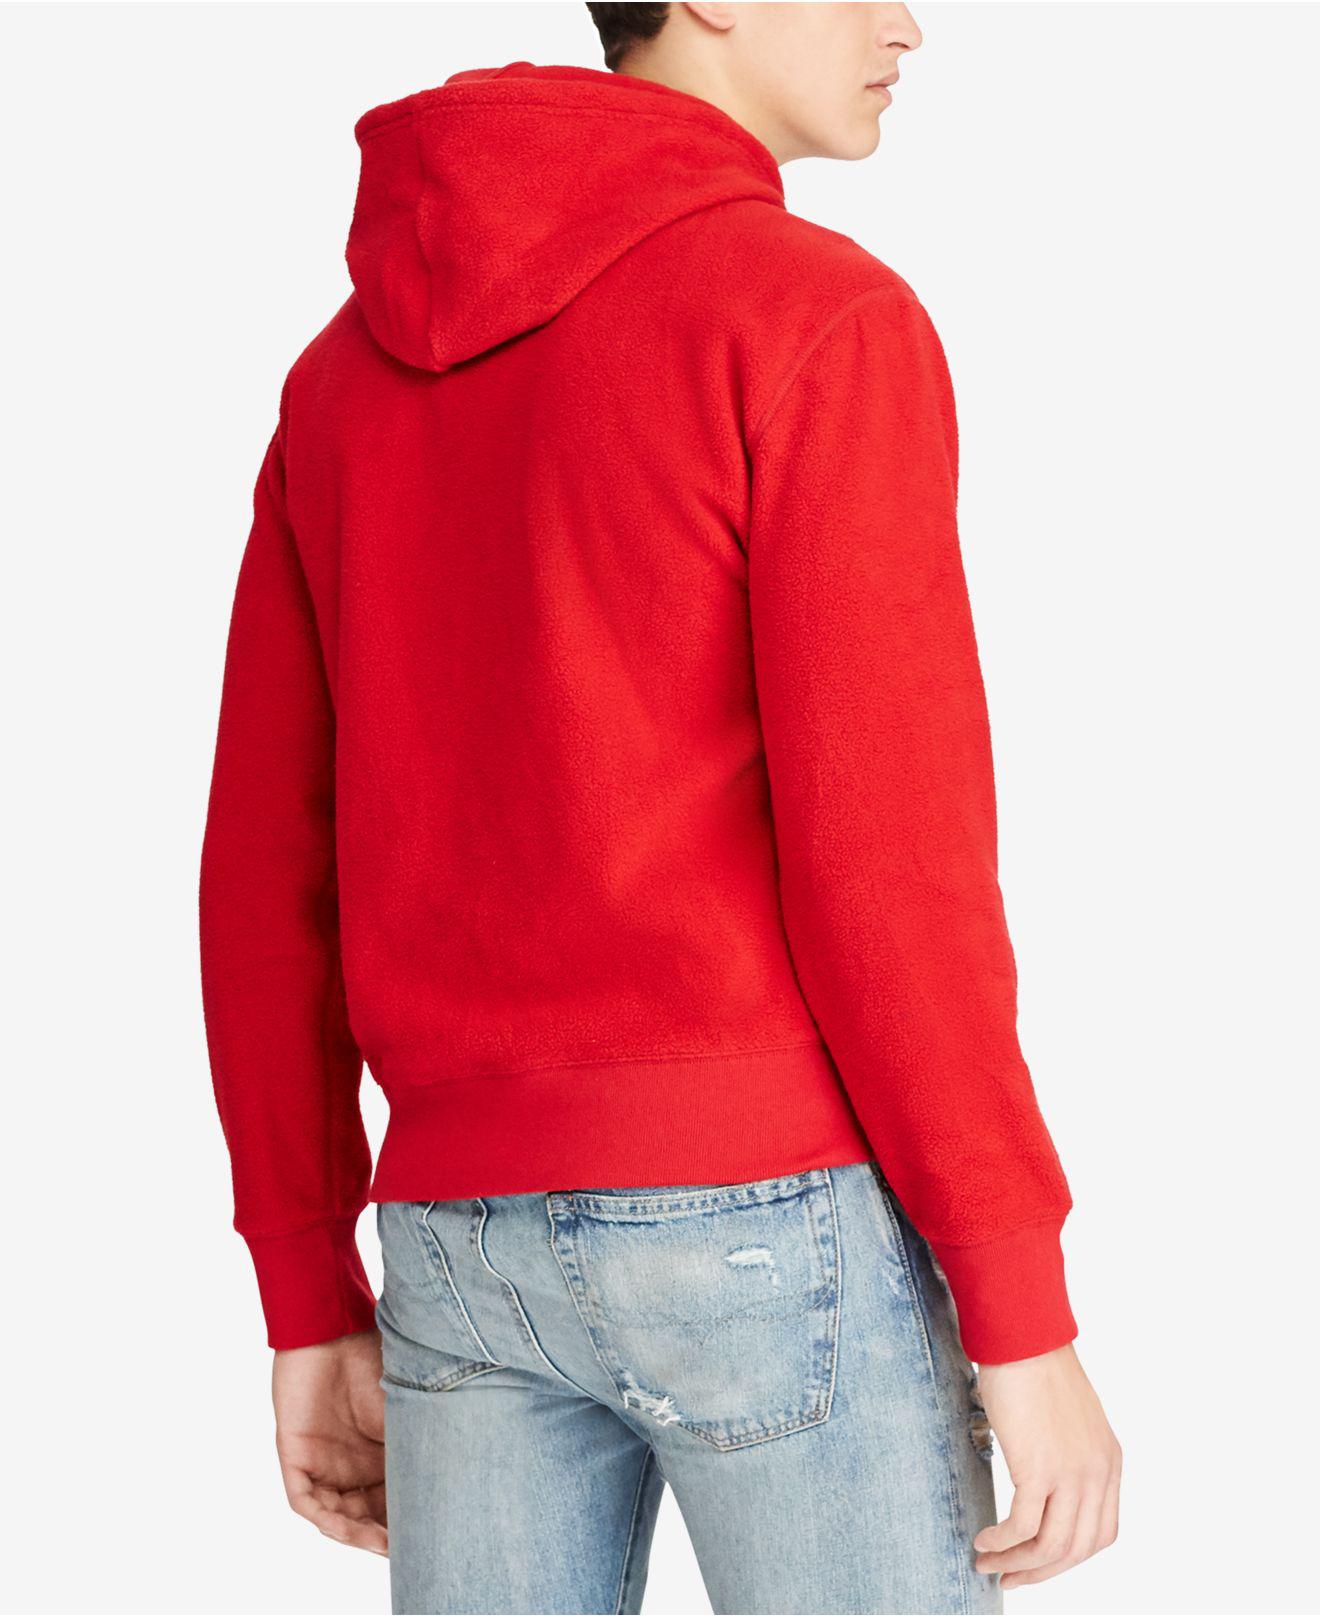 Polo Ralph Lauren Men's Graphic-print Fleece Hoodie in Red for Men - Lyst